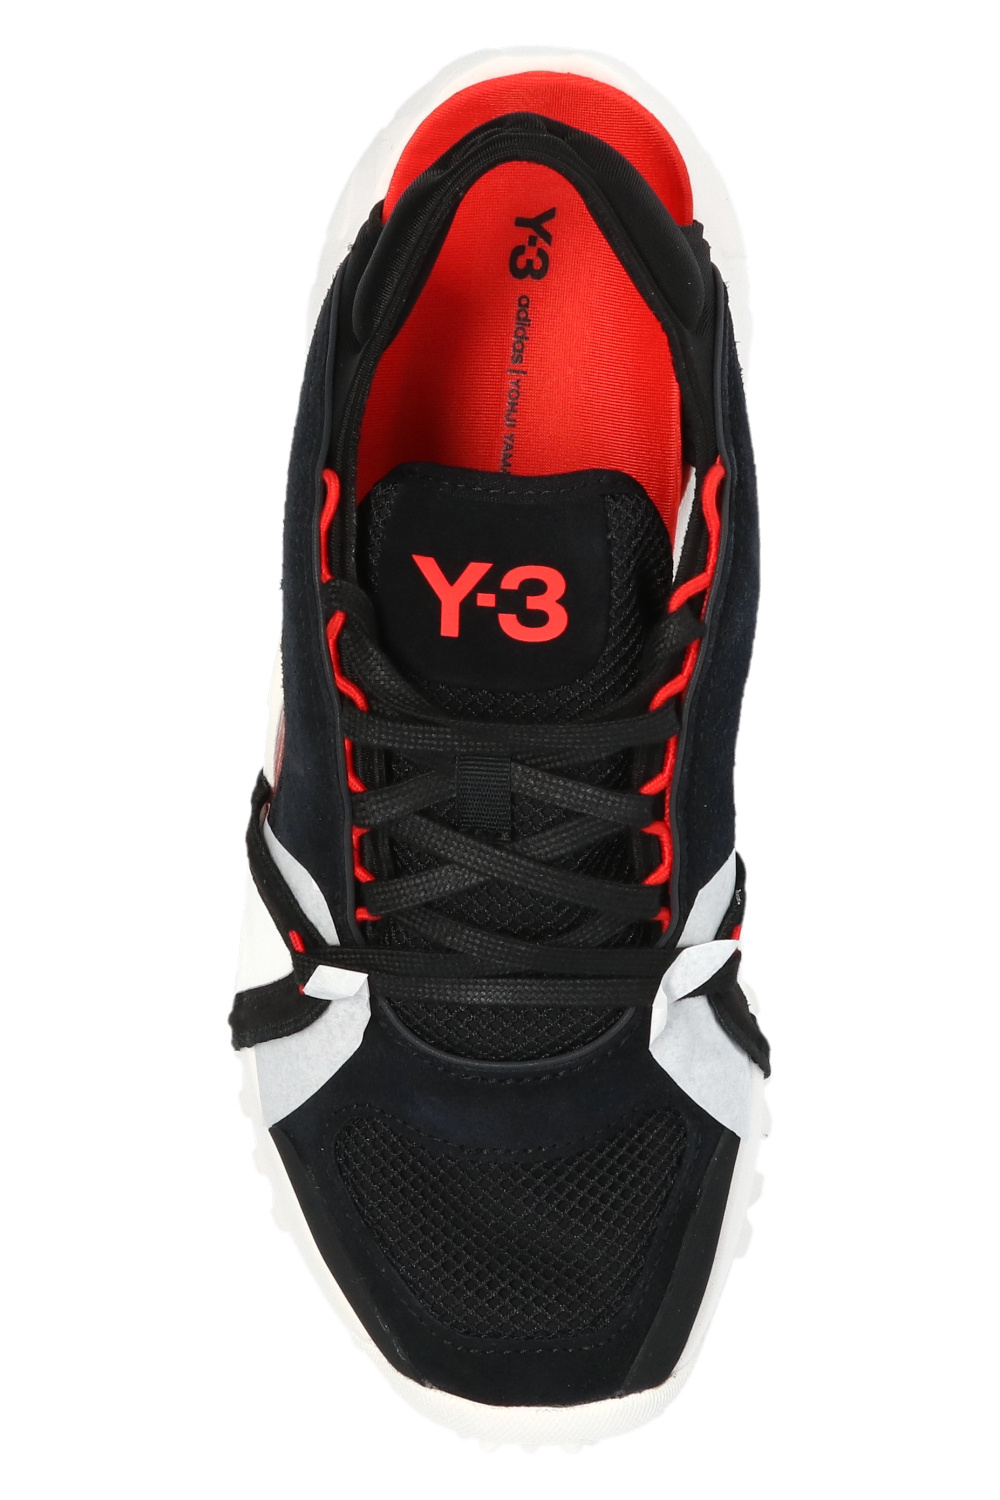 Notoma' sandals Y-3 Yohji Yamamoto - Vitkac GB